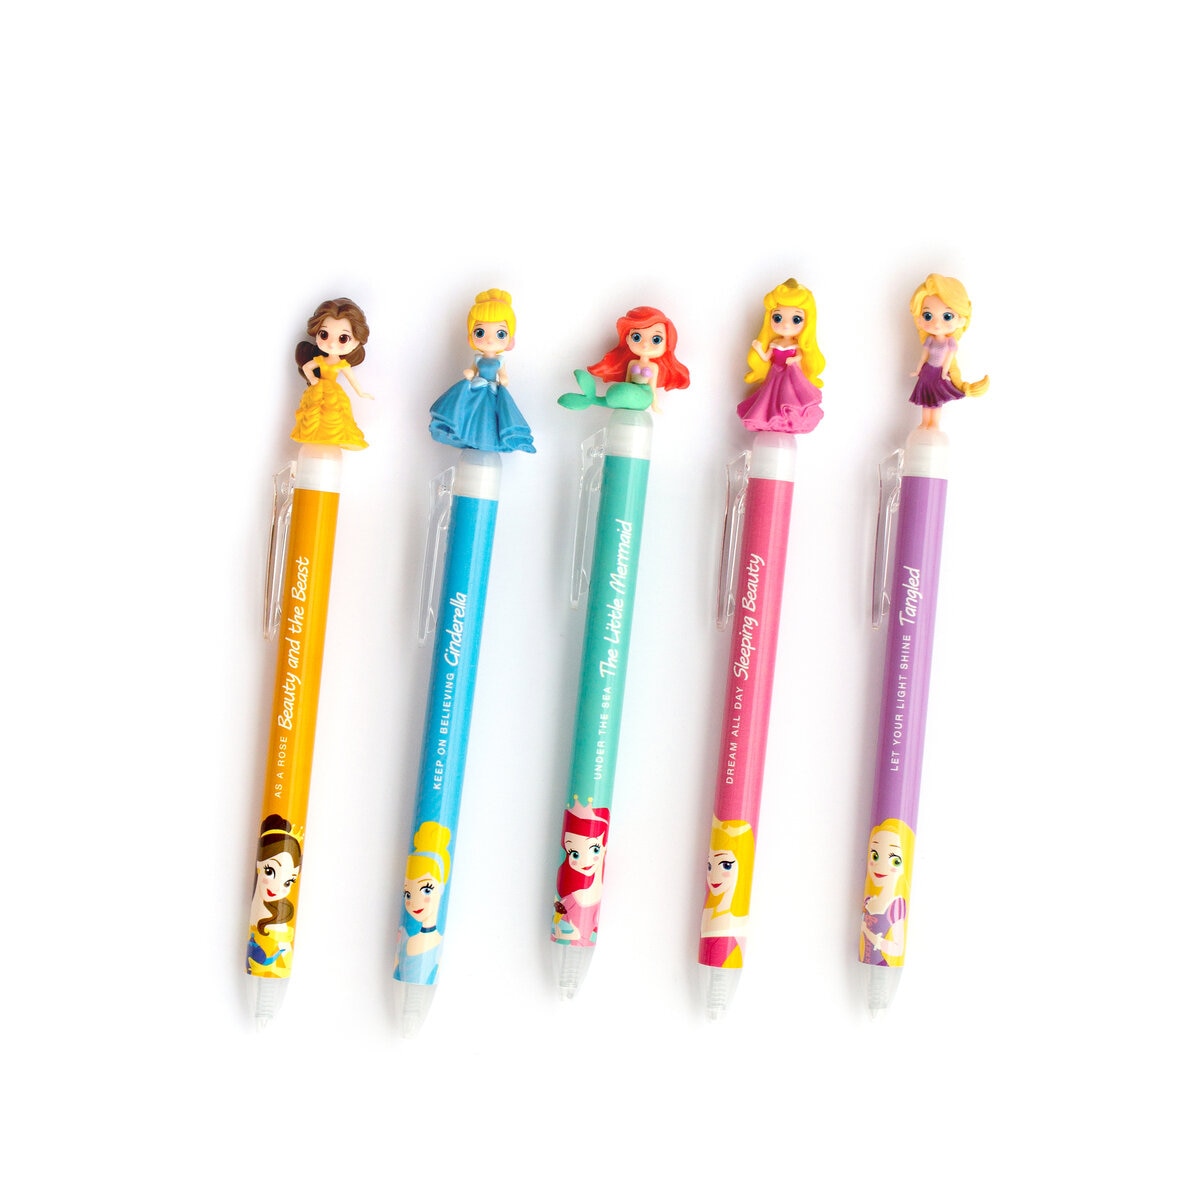 ディズニー ノック式ゲルボールペン 10本セット Costco Japan